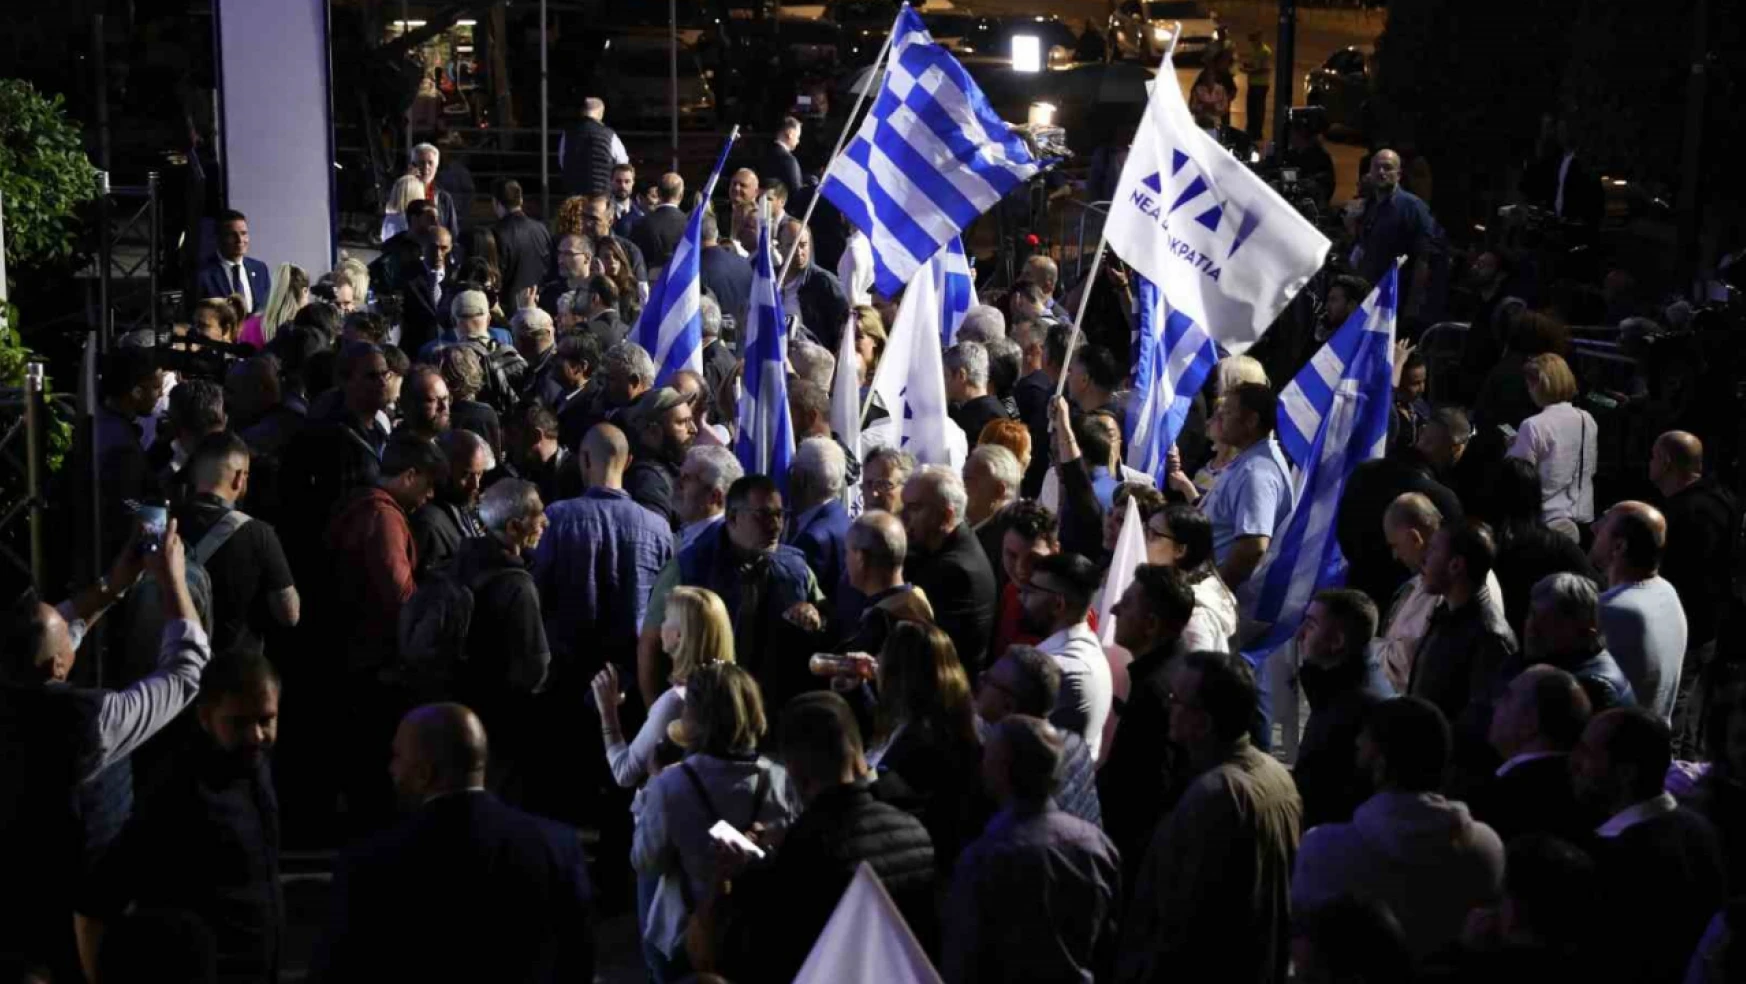 Yunanistan'da resmi olmayan sonuçlara göre seçimin galibi Miçotakis'in partisi oldu